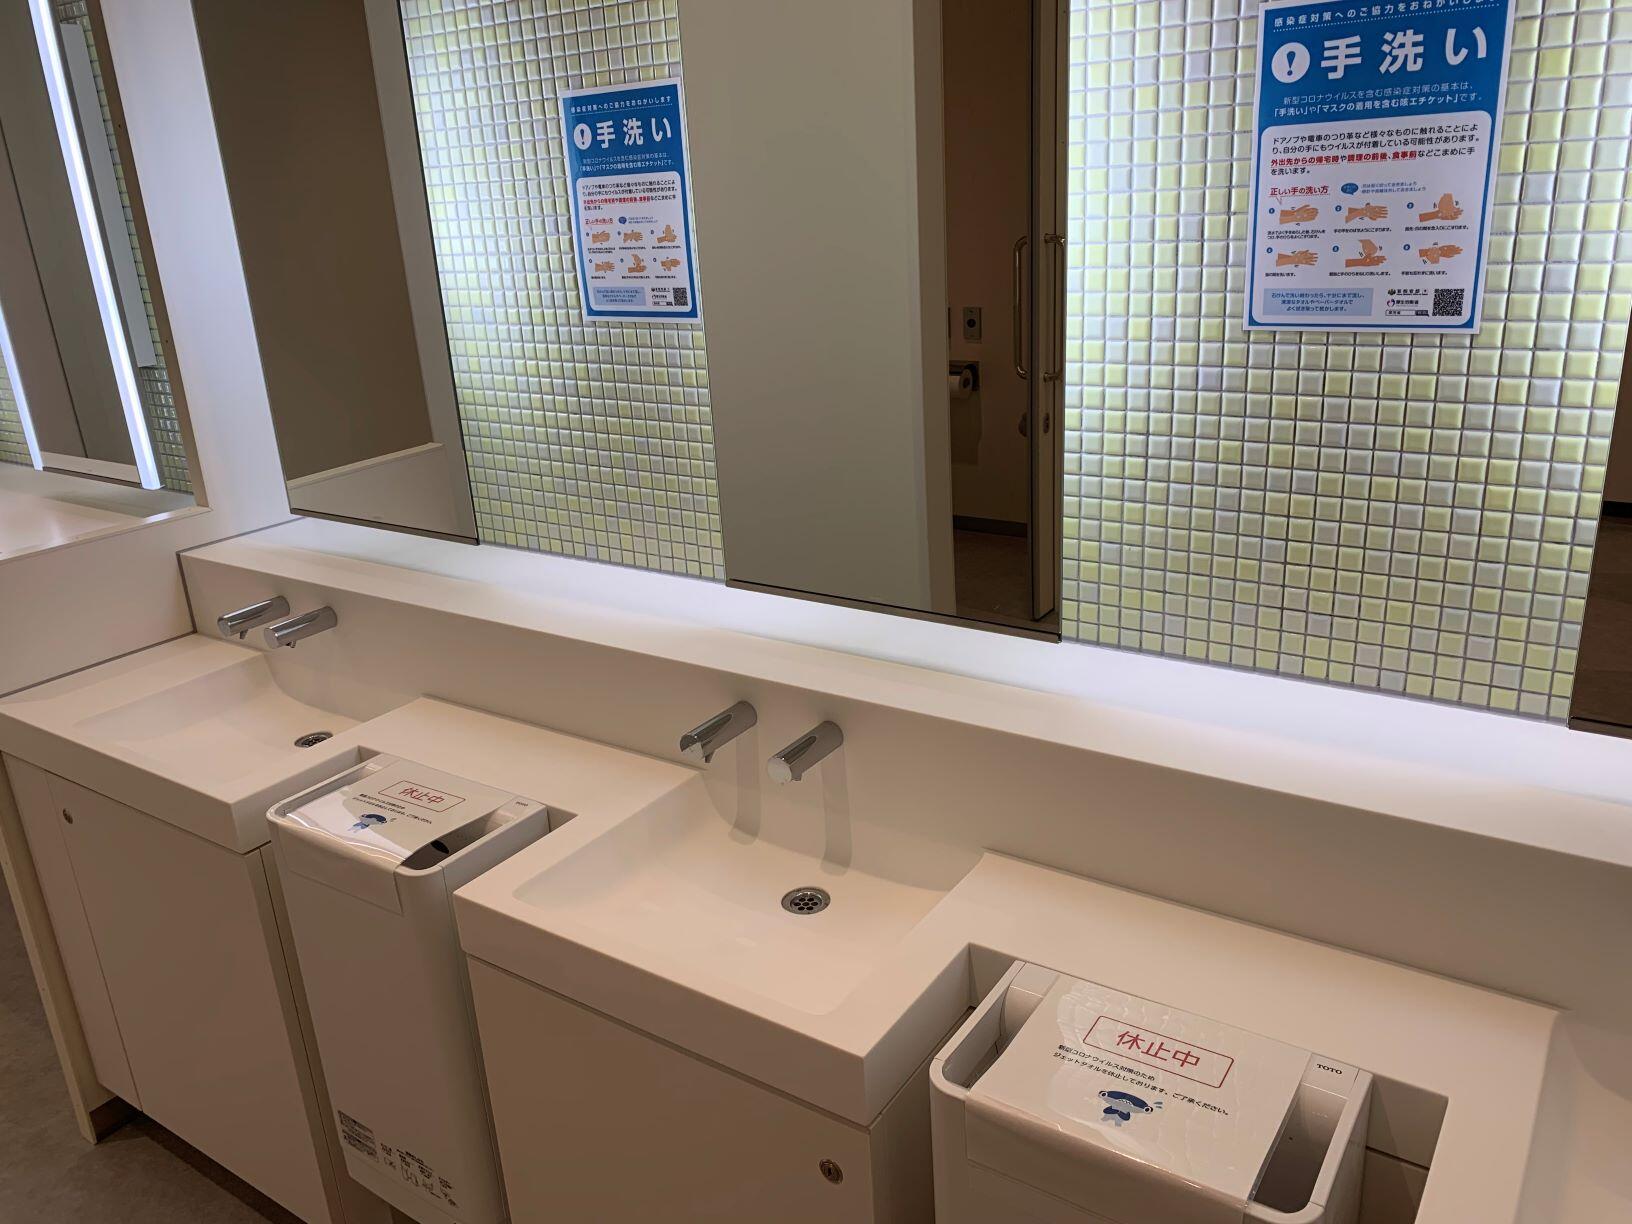 タオル コロナ ジェット 公共トイレのジェットタオルが使用禁止になる理由 ｜